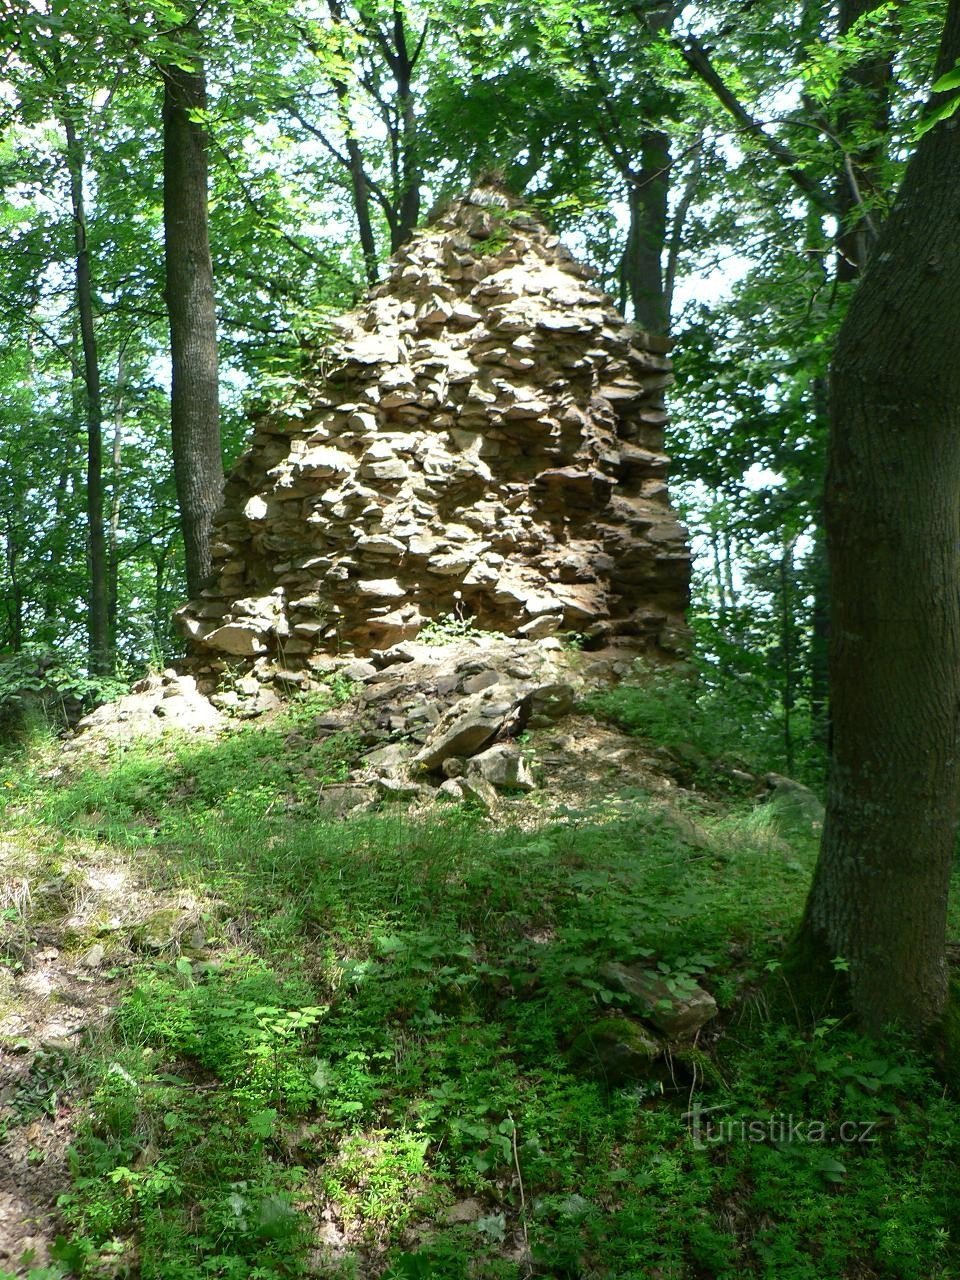 Pušperk, bức tường ở lối vào lâu đài